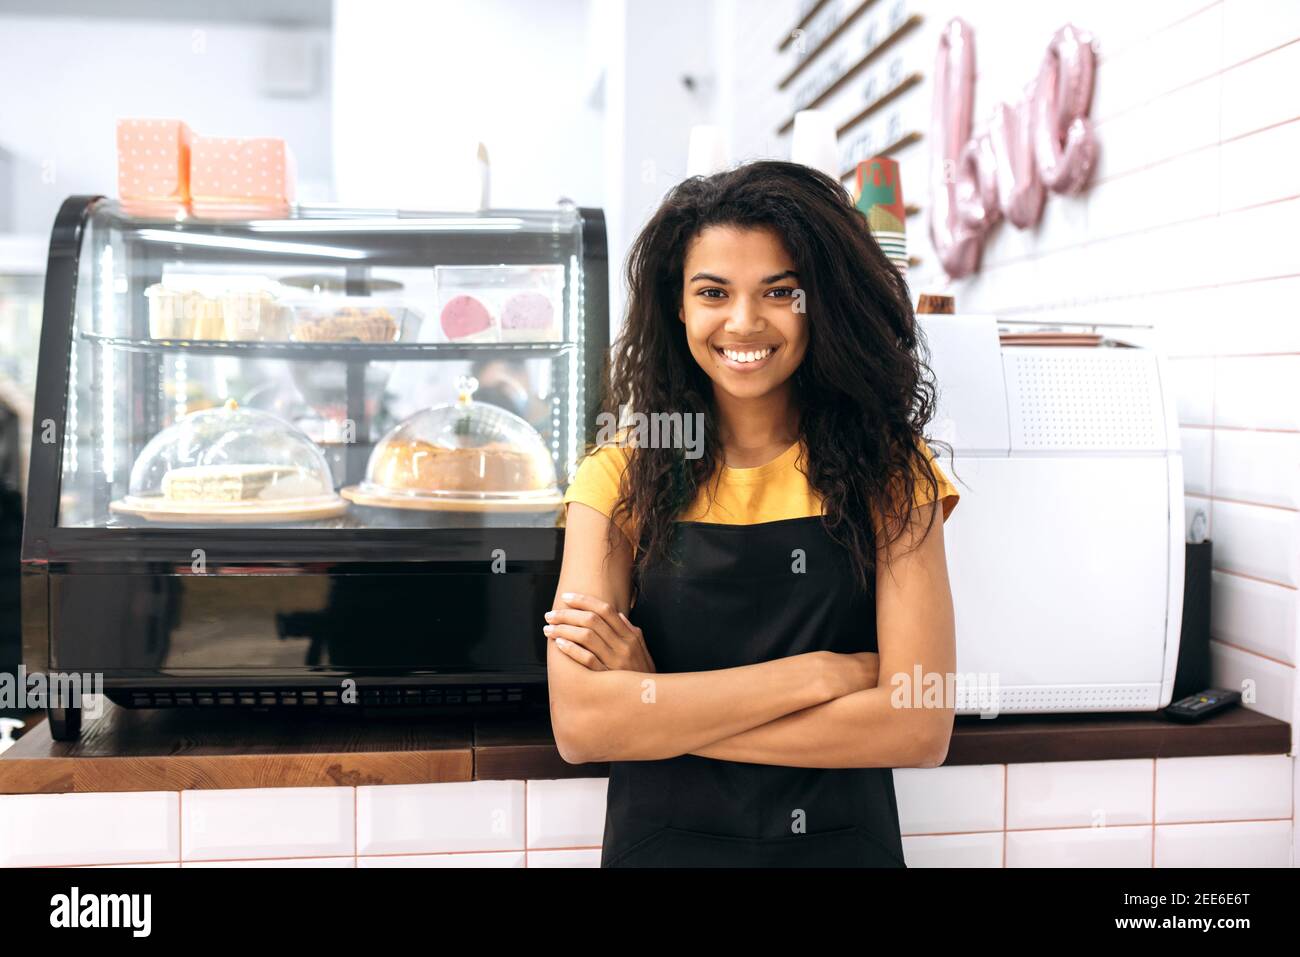 Freundliches afroamerikanisches Mädchen, Kellnerin oder Geschäftsbesitzerin, steht in einem Café in der Nähe von Desserts, mit gekreuzten Armen, schaut und lächelt an der Kamera Stockfoto